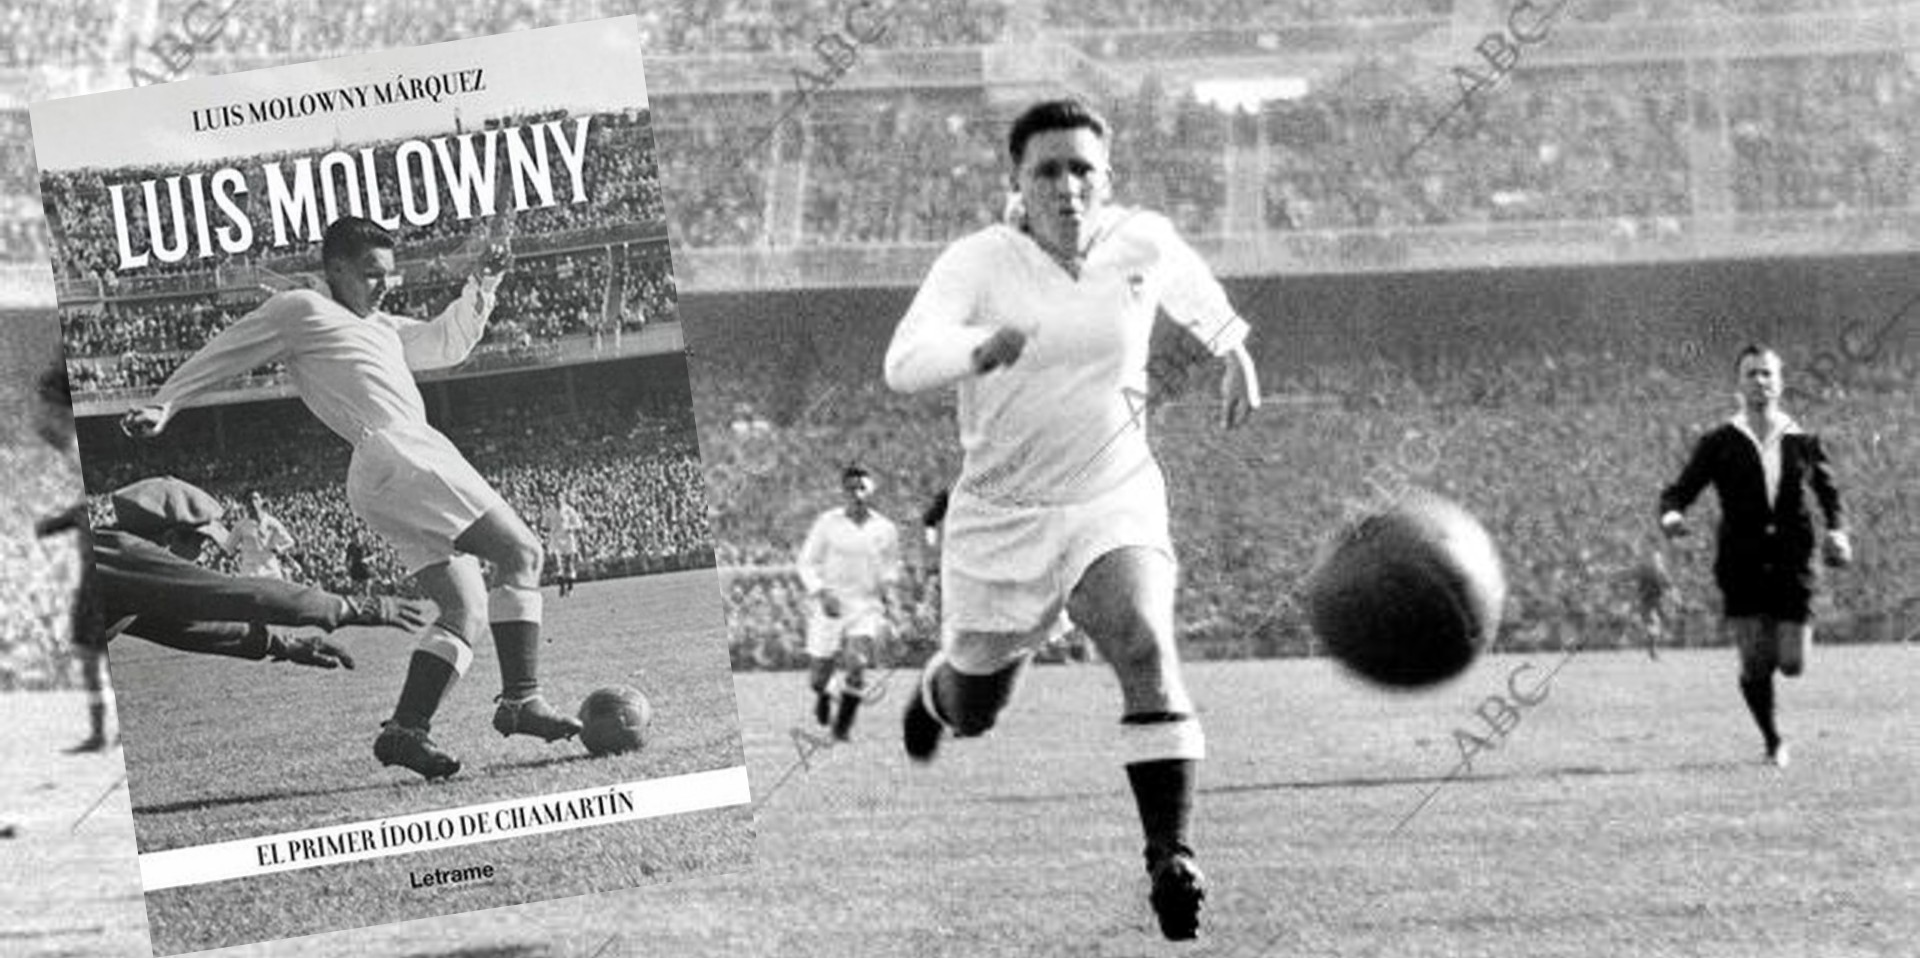 El libro que retrata la vida de Luis Molowny, uno de los futbolistas más importantes en la historia del Real Madrid, escrito por su nieto Luis Molowny Márquez.